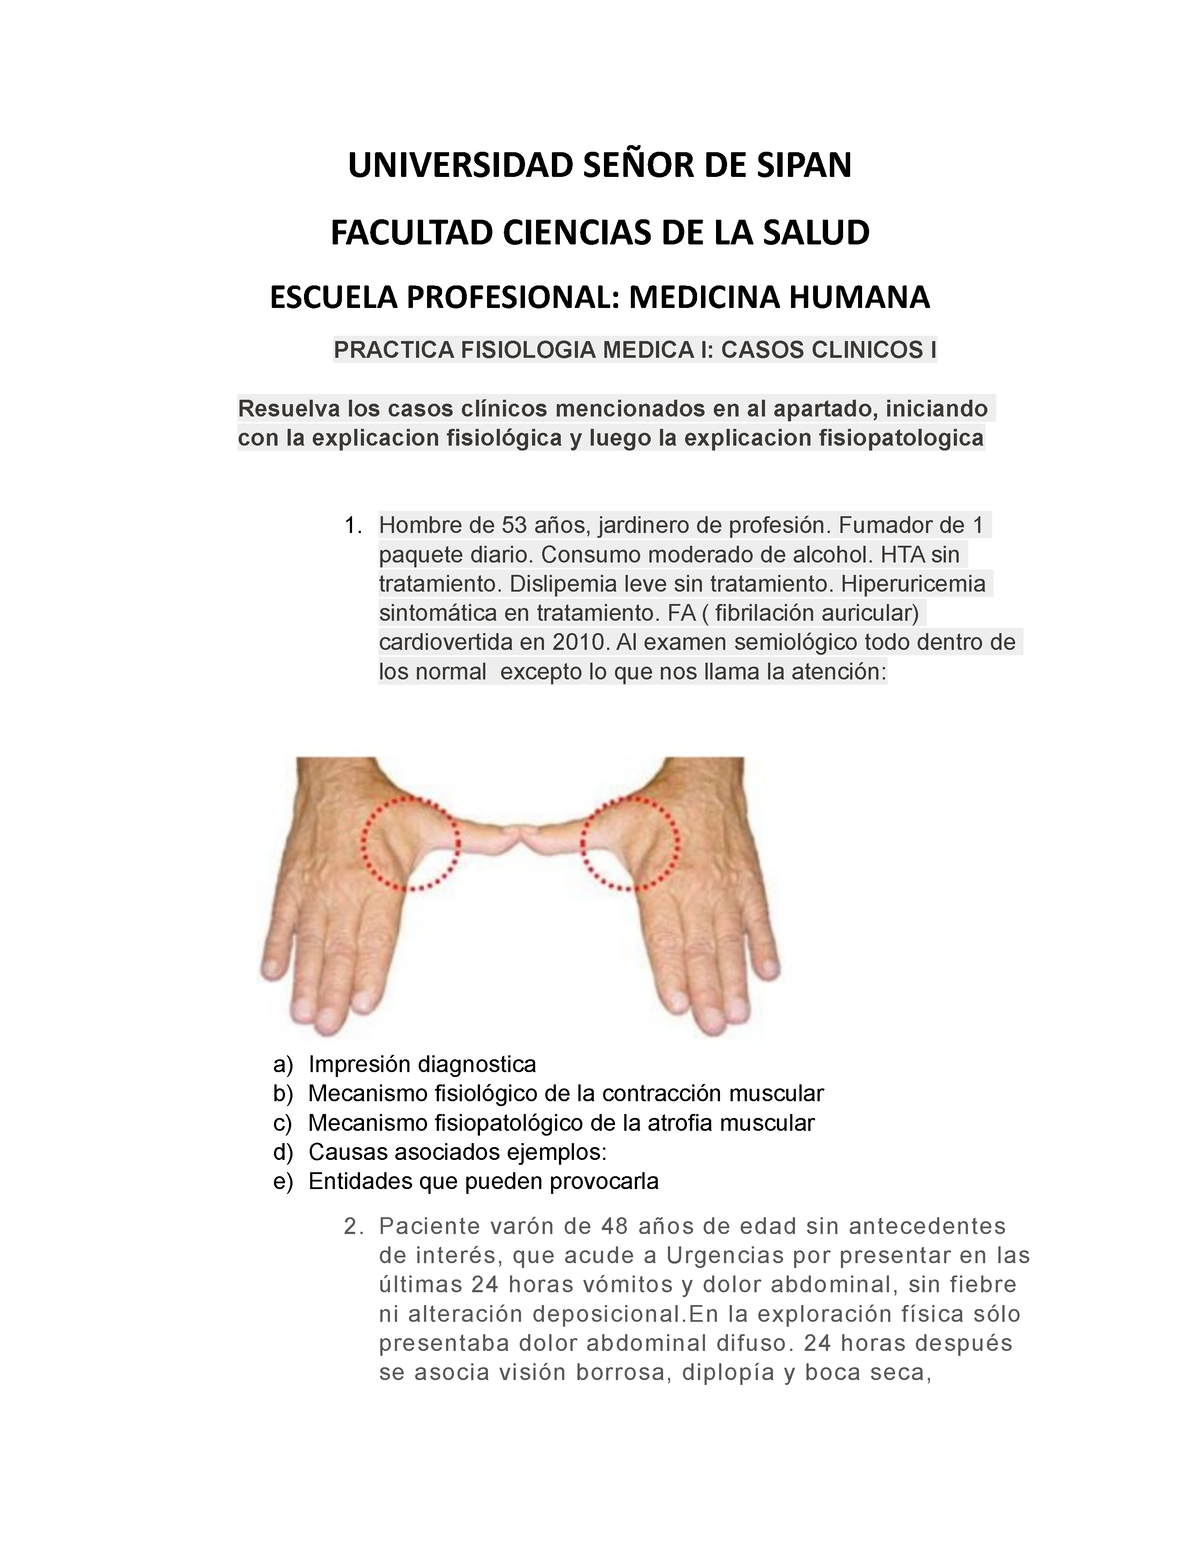 CASO Clinico I UNIVERSIDAD SEÑOR DE SIPAN FACULTAD CIENCIAS DE LA SALUD ESCUELA PROFESIONAL